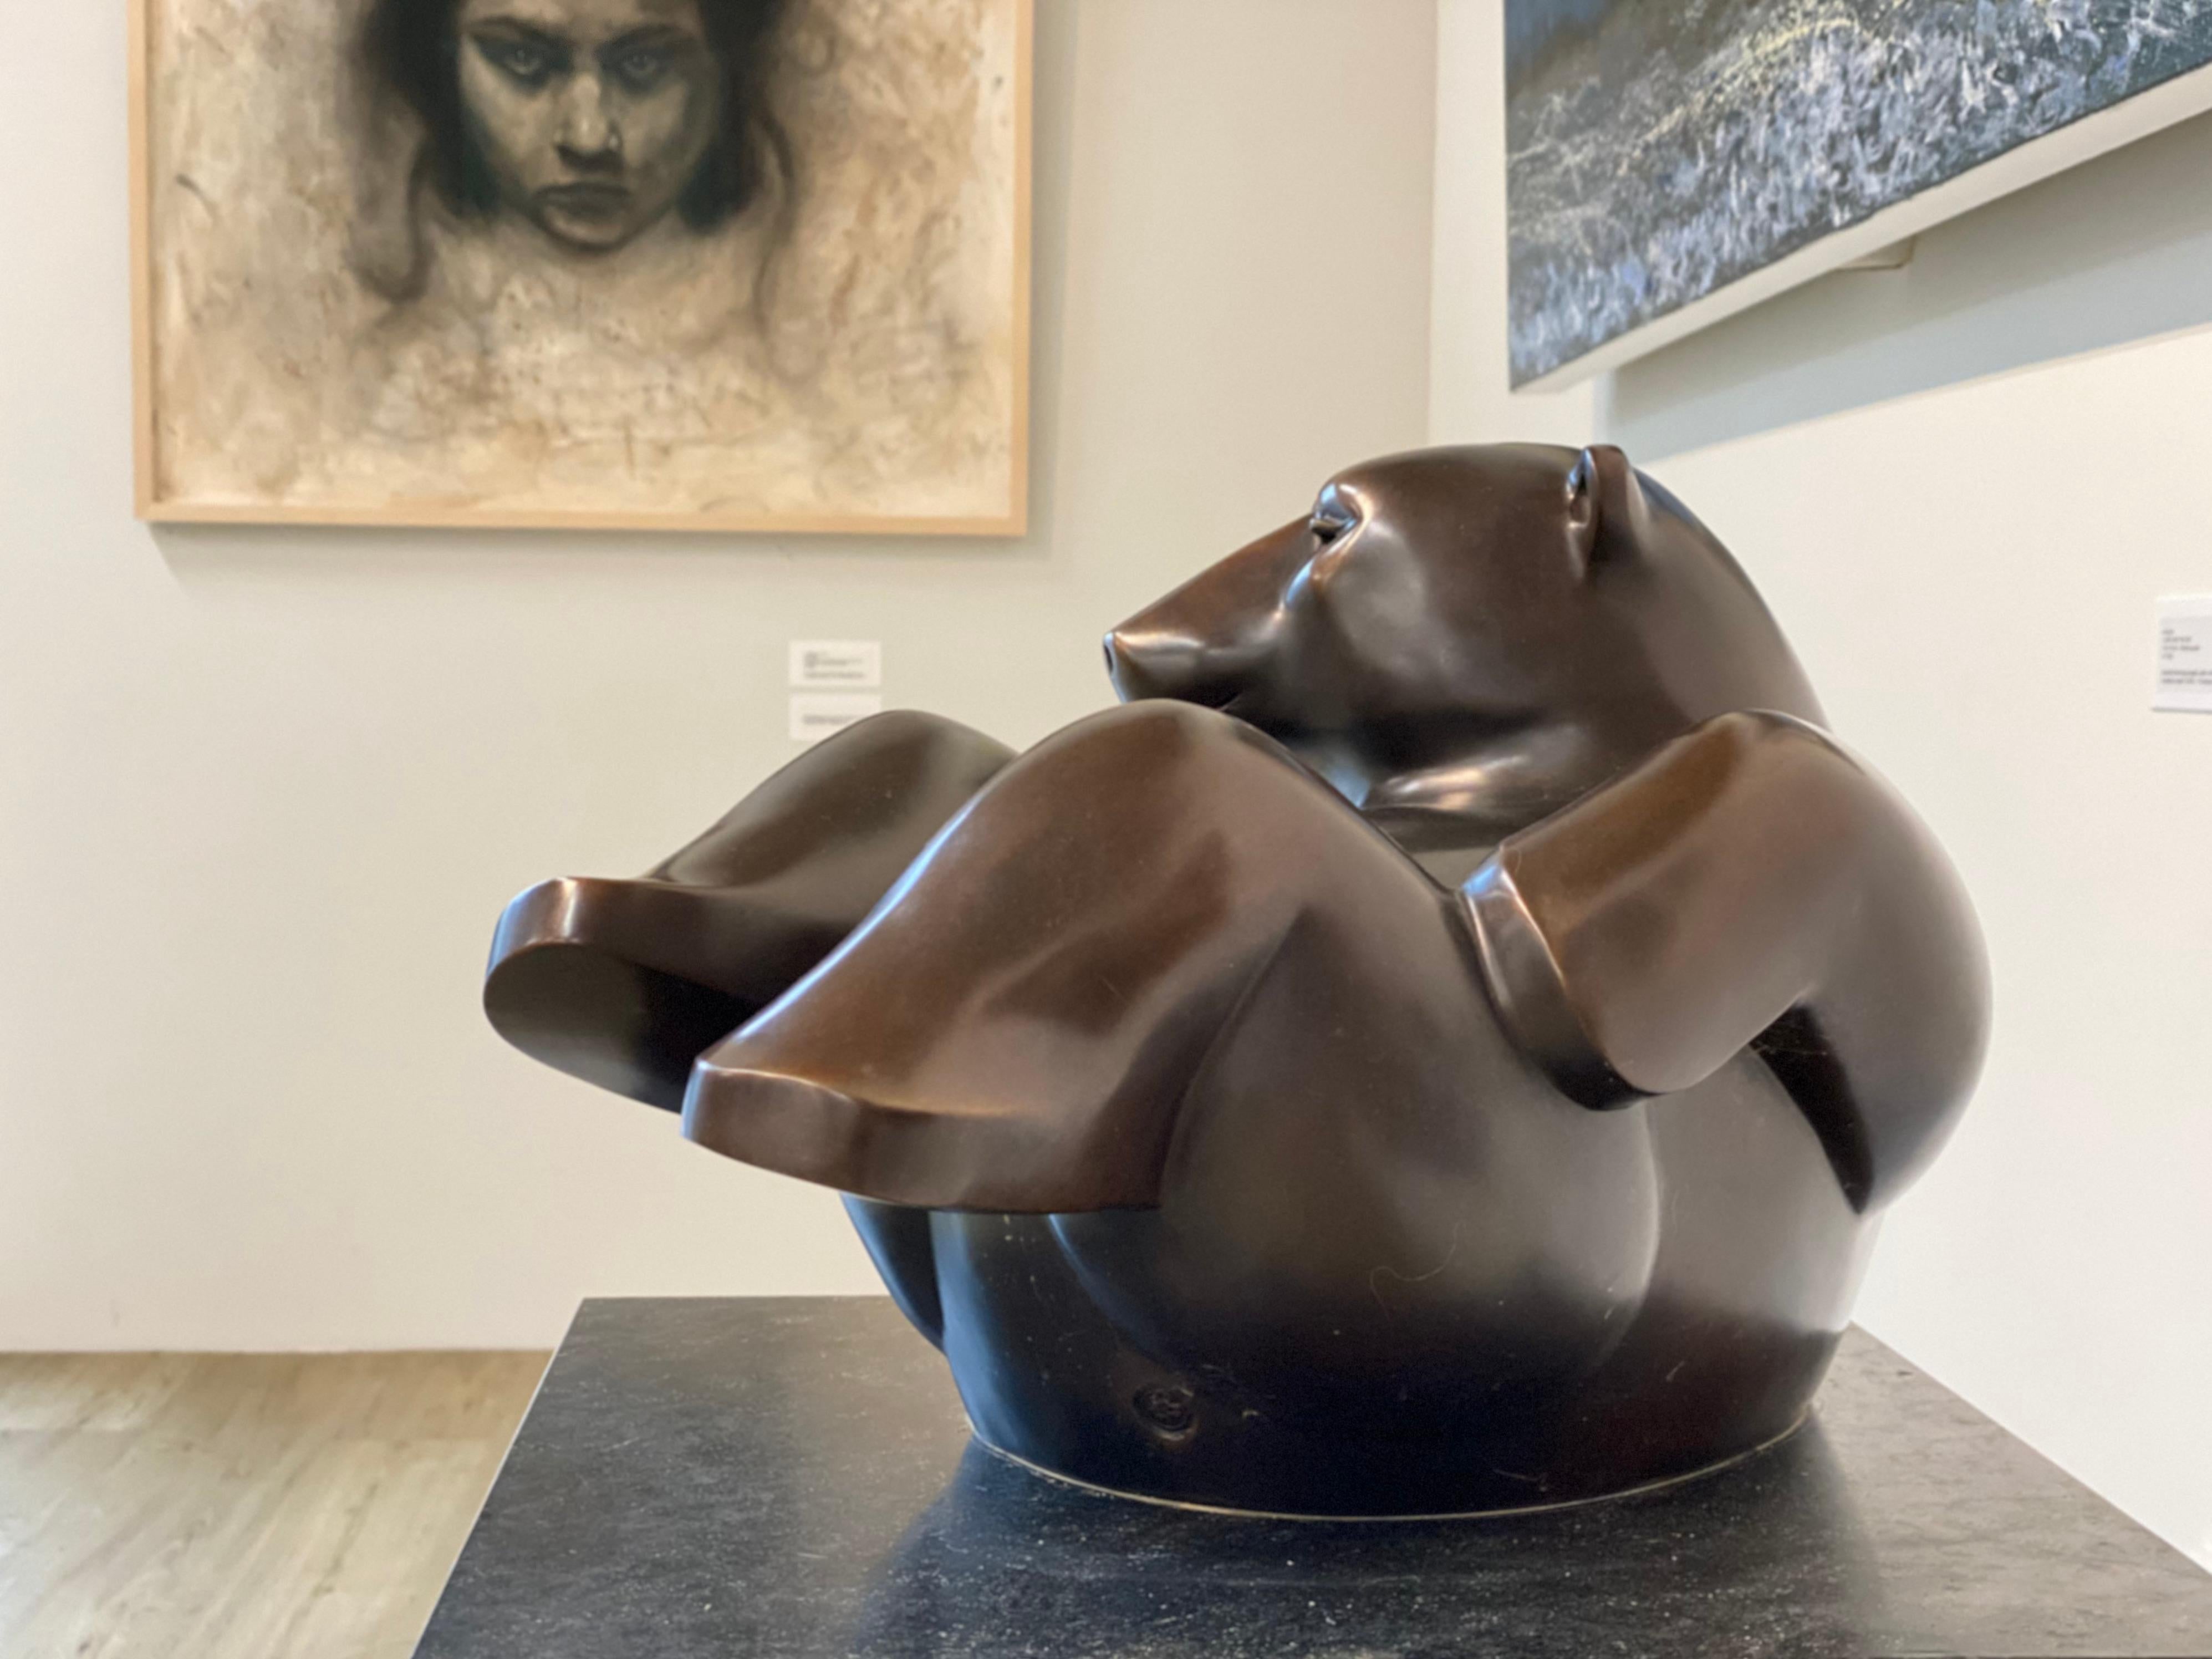 Der niederländische Künstler Frans van Straaten (1963) sollte als Künstler des Gleichgewichts bezeichnet werden, der immer auf der Suche nach Harmonie zwischen Kraft und Bewegung in Verbindung mit dem Raum ist. Durch die breite Palette seiner